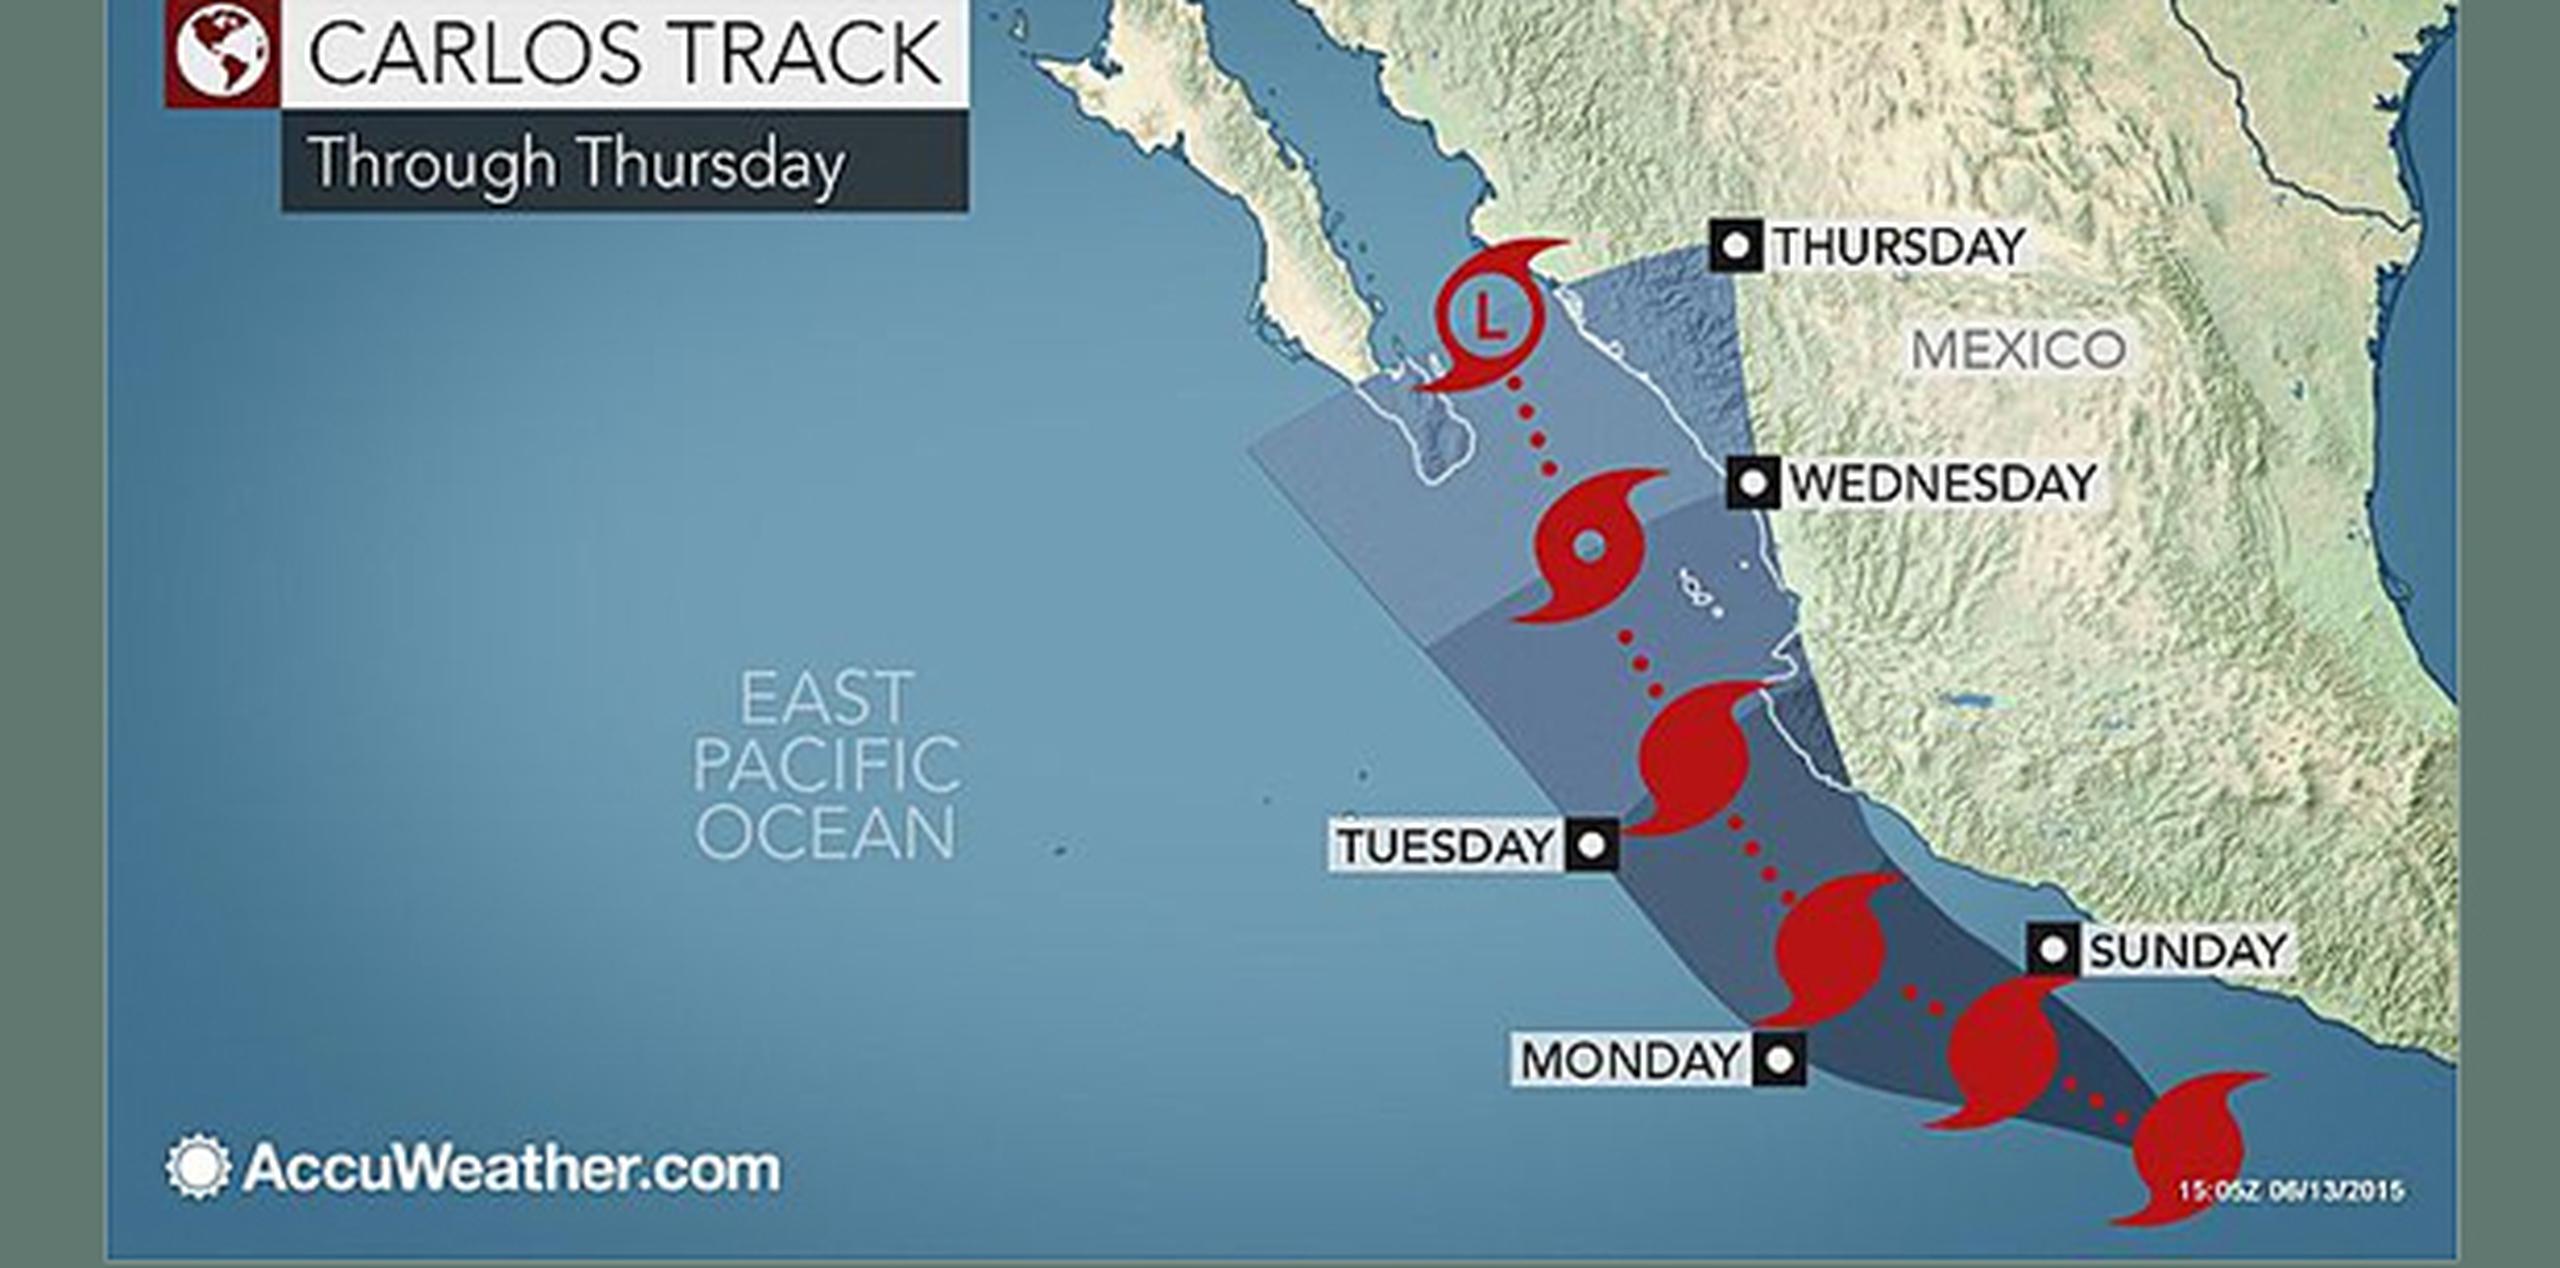 Según los pronósticos, Carlos no aumentará su intensidad aunque seguirá acercándose a las costas mexicanas. (Accuweather.com)